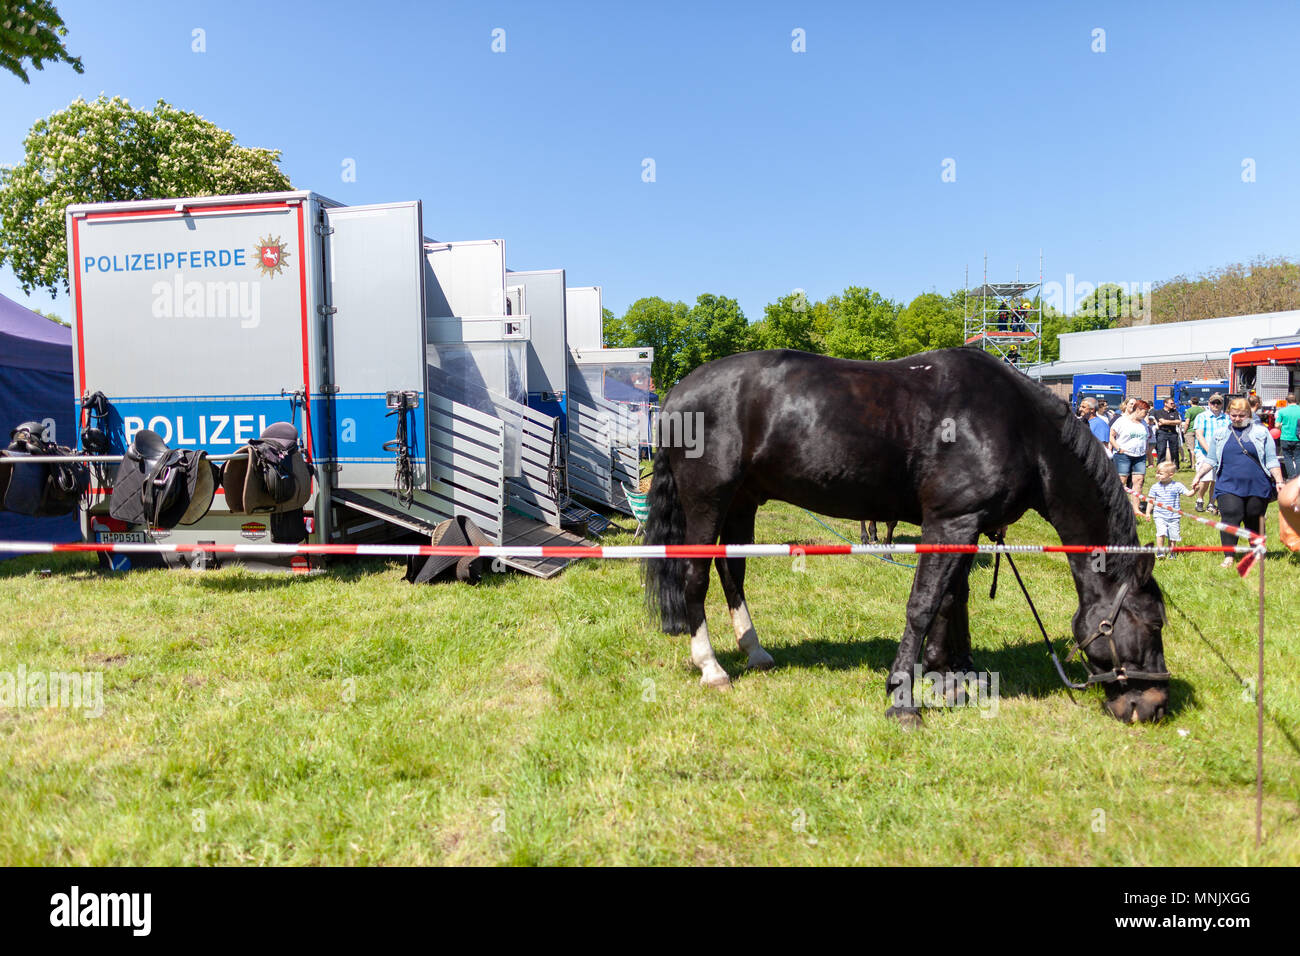 Hambourg / Allemagne - Mai 6, 2018 : la police allemande calèche sur un enclos. Polizeipferde police signifie des chevaux. Banque D'Images